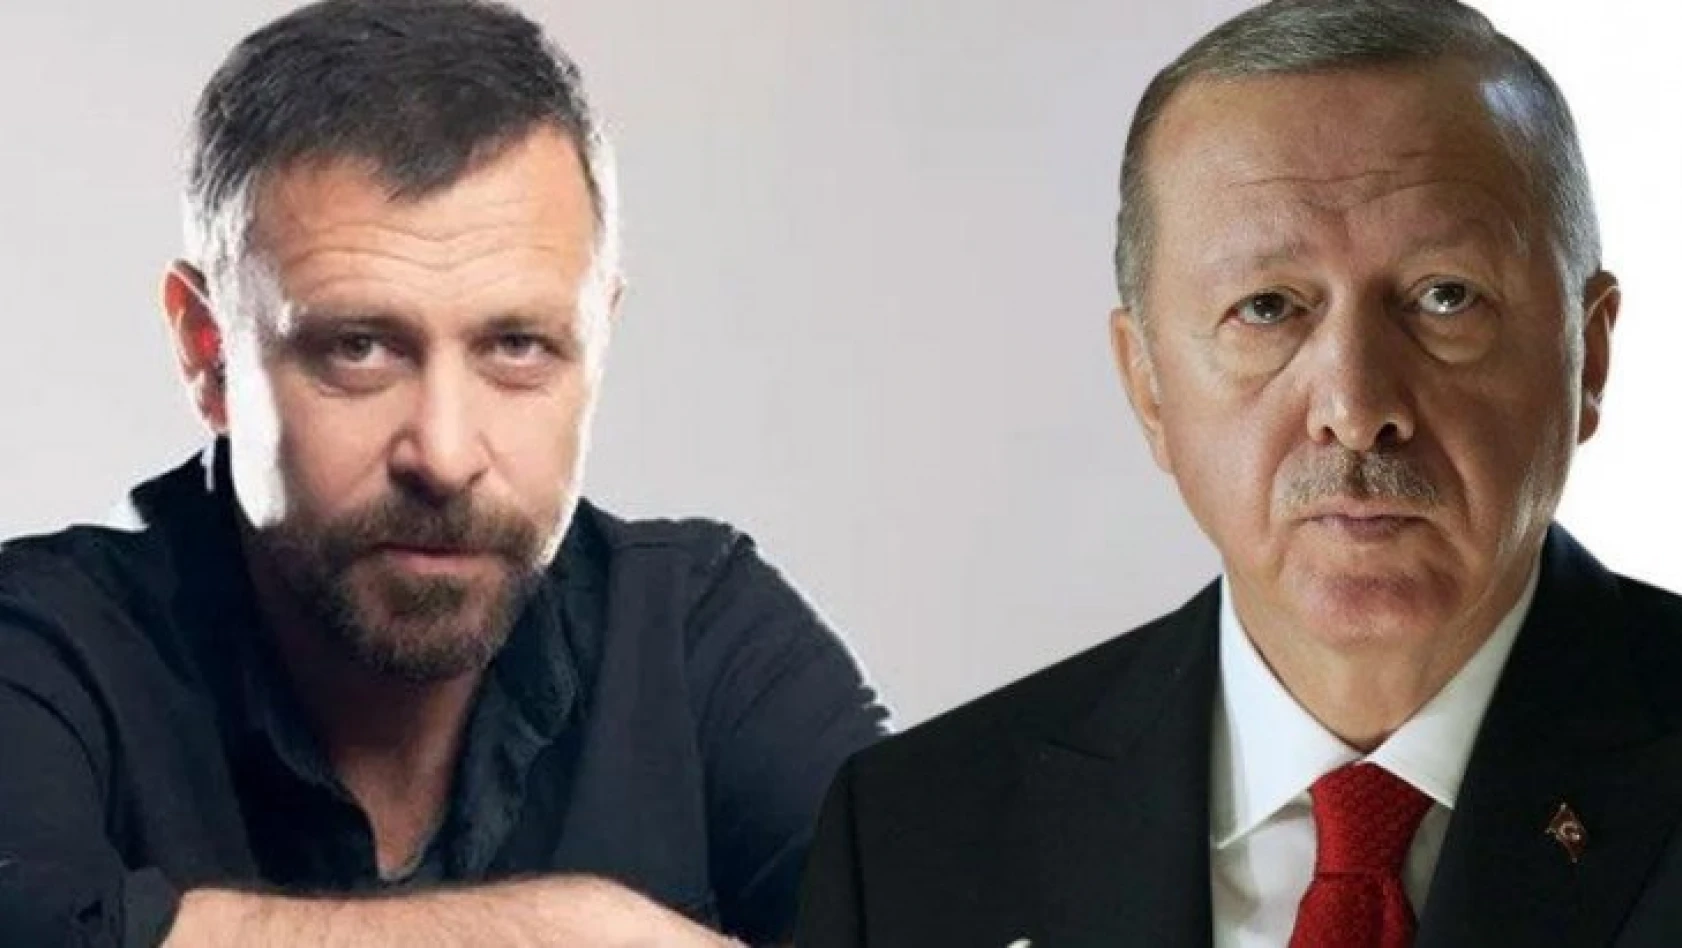 Nejat İşler, Recep Tayyip Erdoğan'ın yeğeni mi?